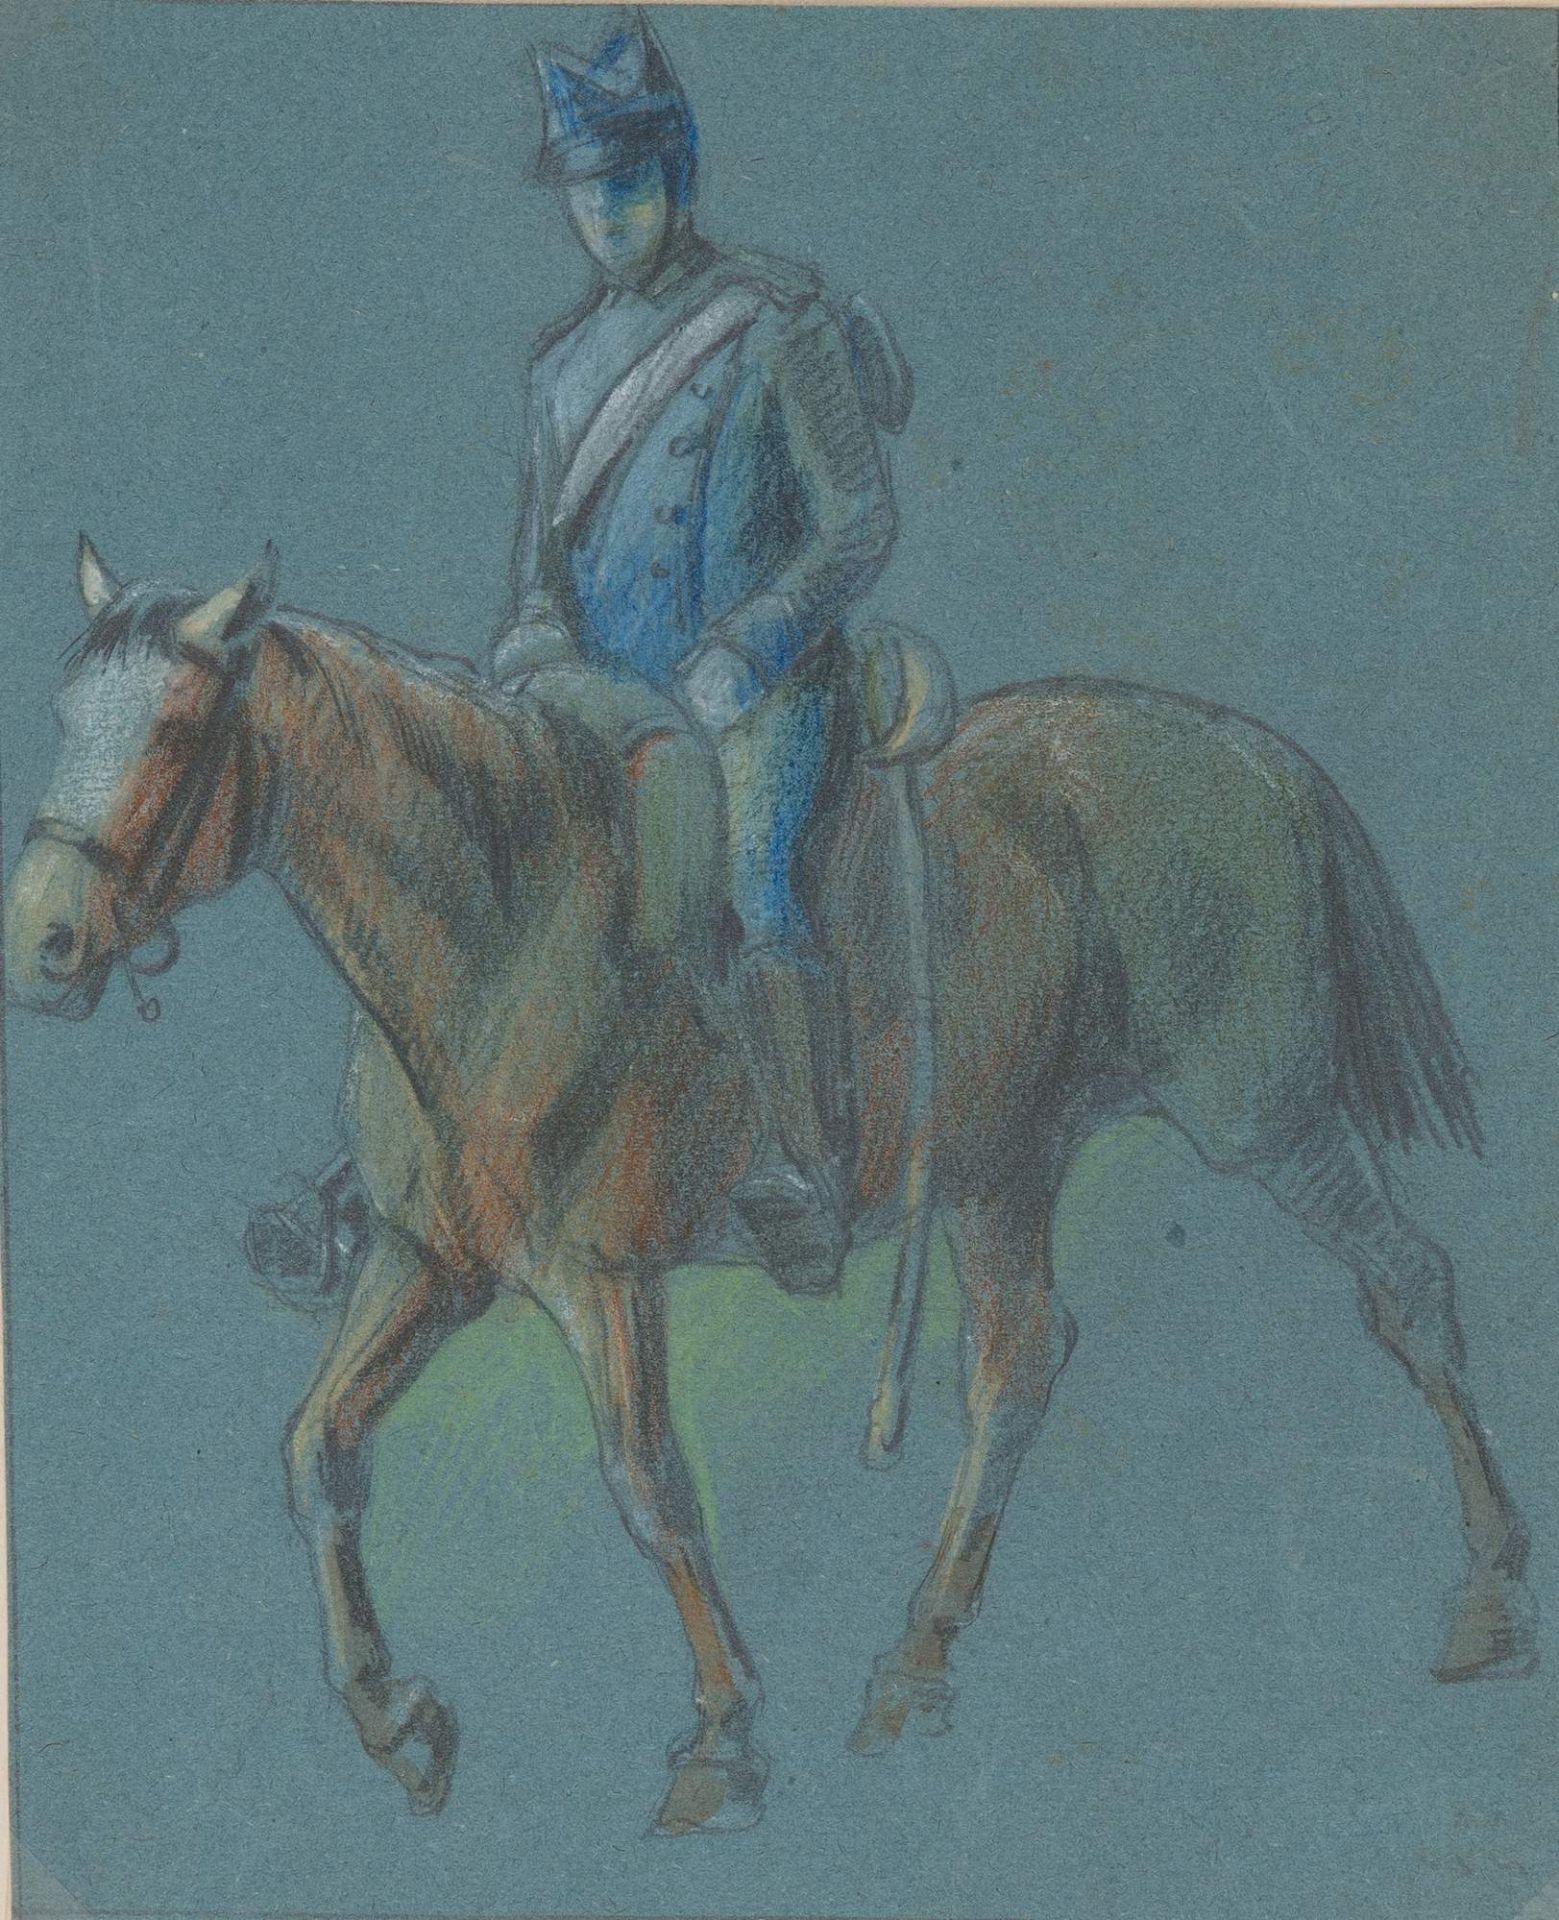 G. BACCHELLI, XIX-XX secolo. “Soldato a cavallo”. Tecnica mista su carta. Cm 20x16,5.